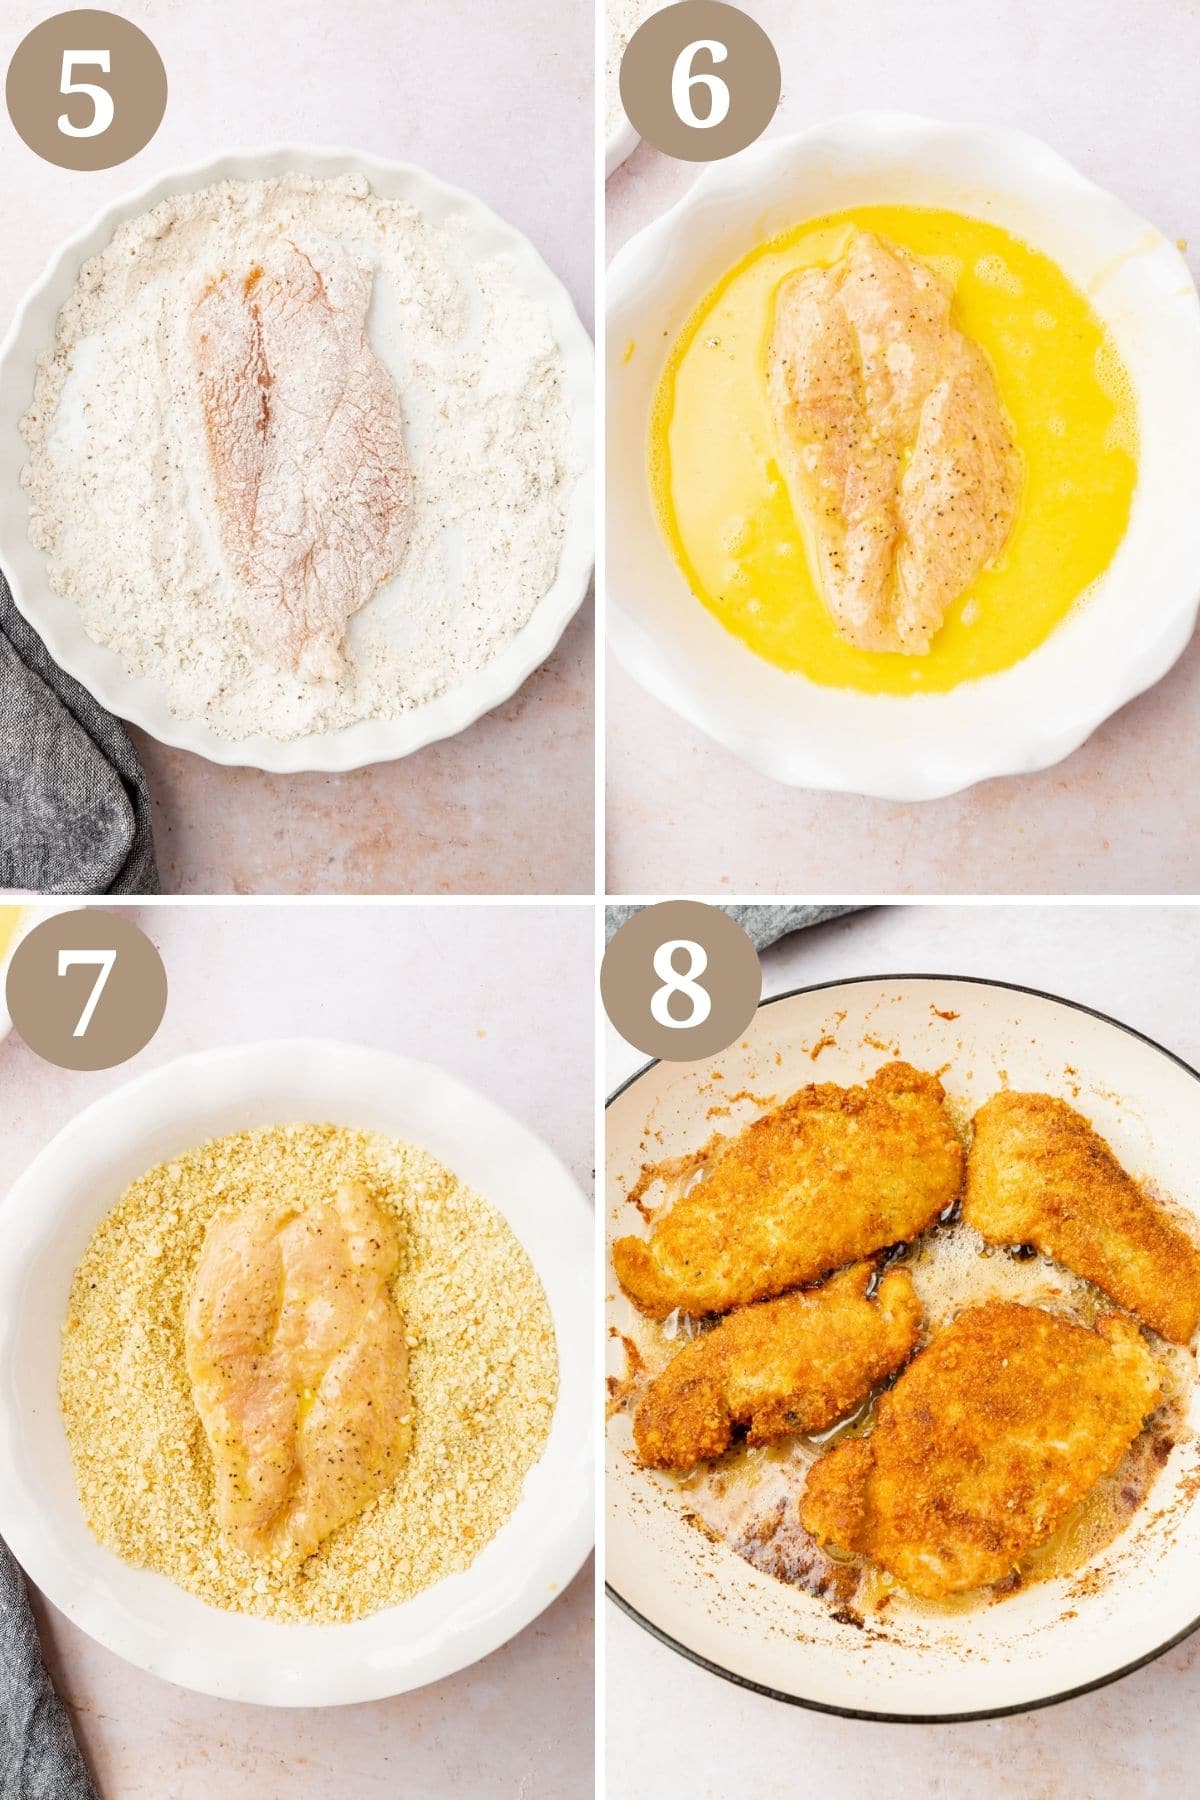 Steps 5-8 for making gluten-free chicken parmesan.